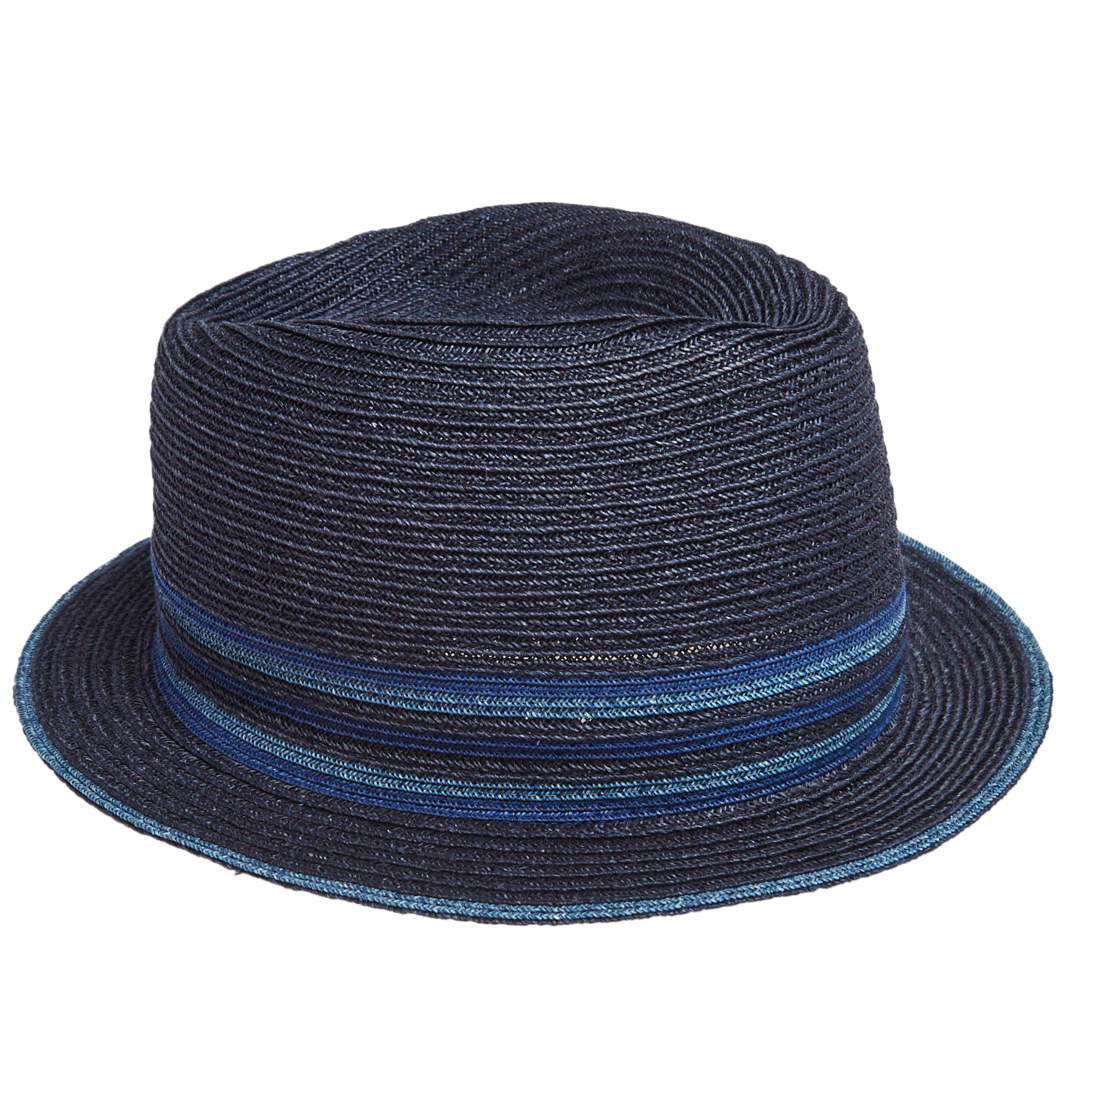 قبعة هيرمس هيمب كلاديو مخططة كحلي (58)